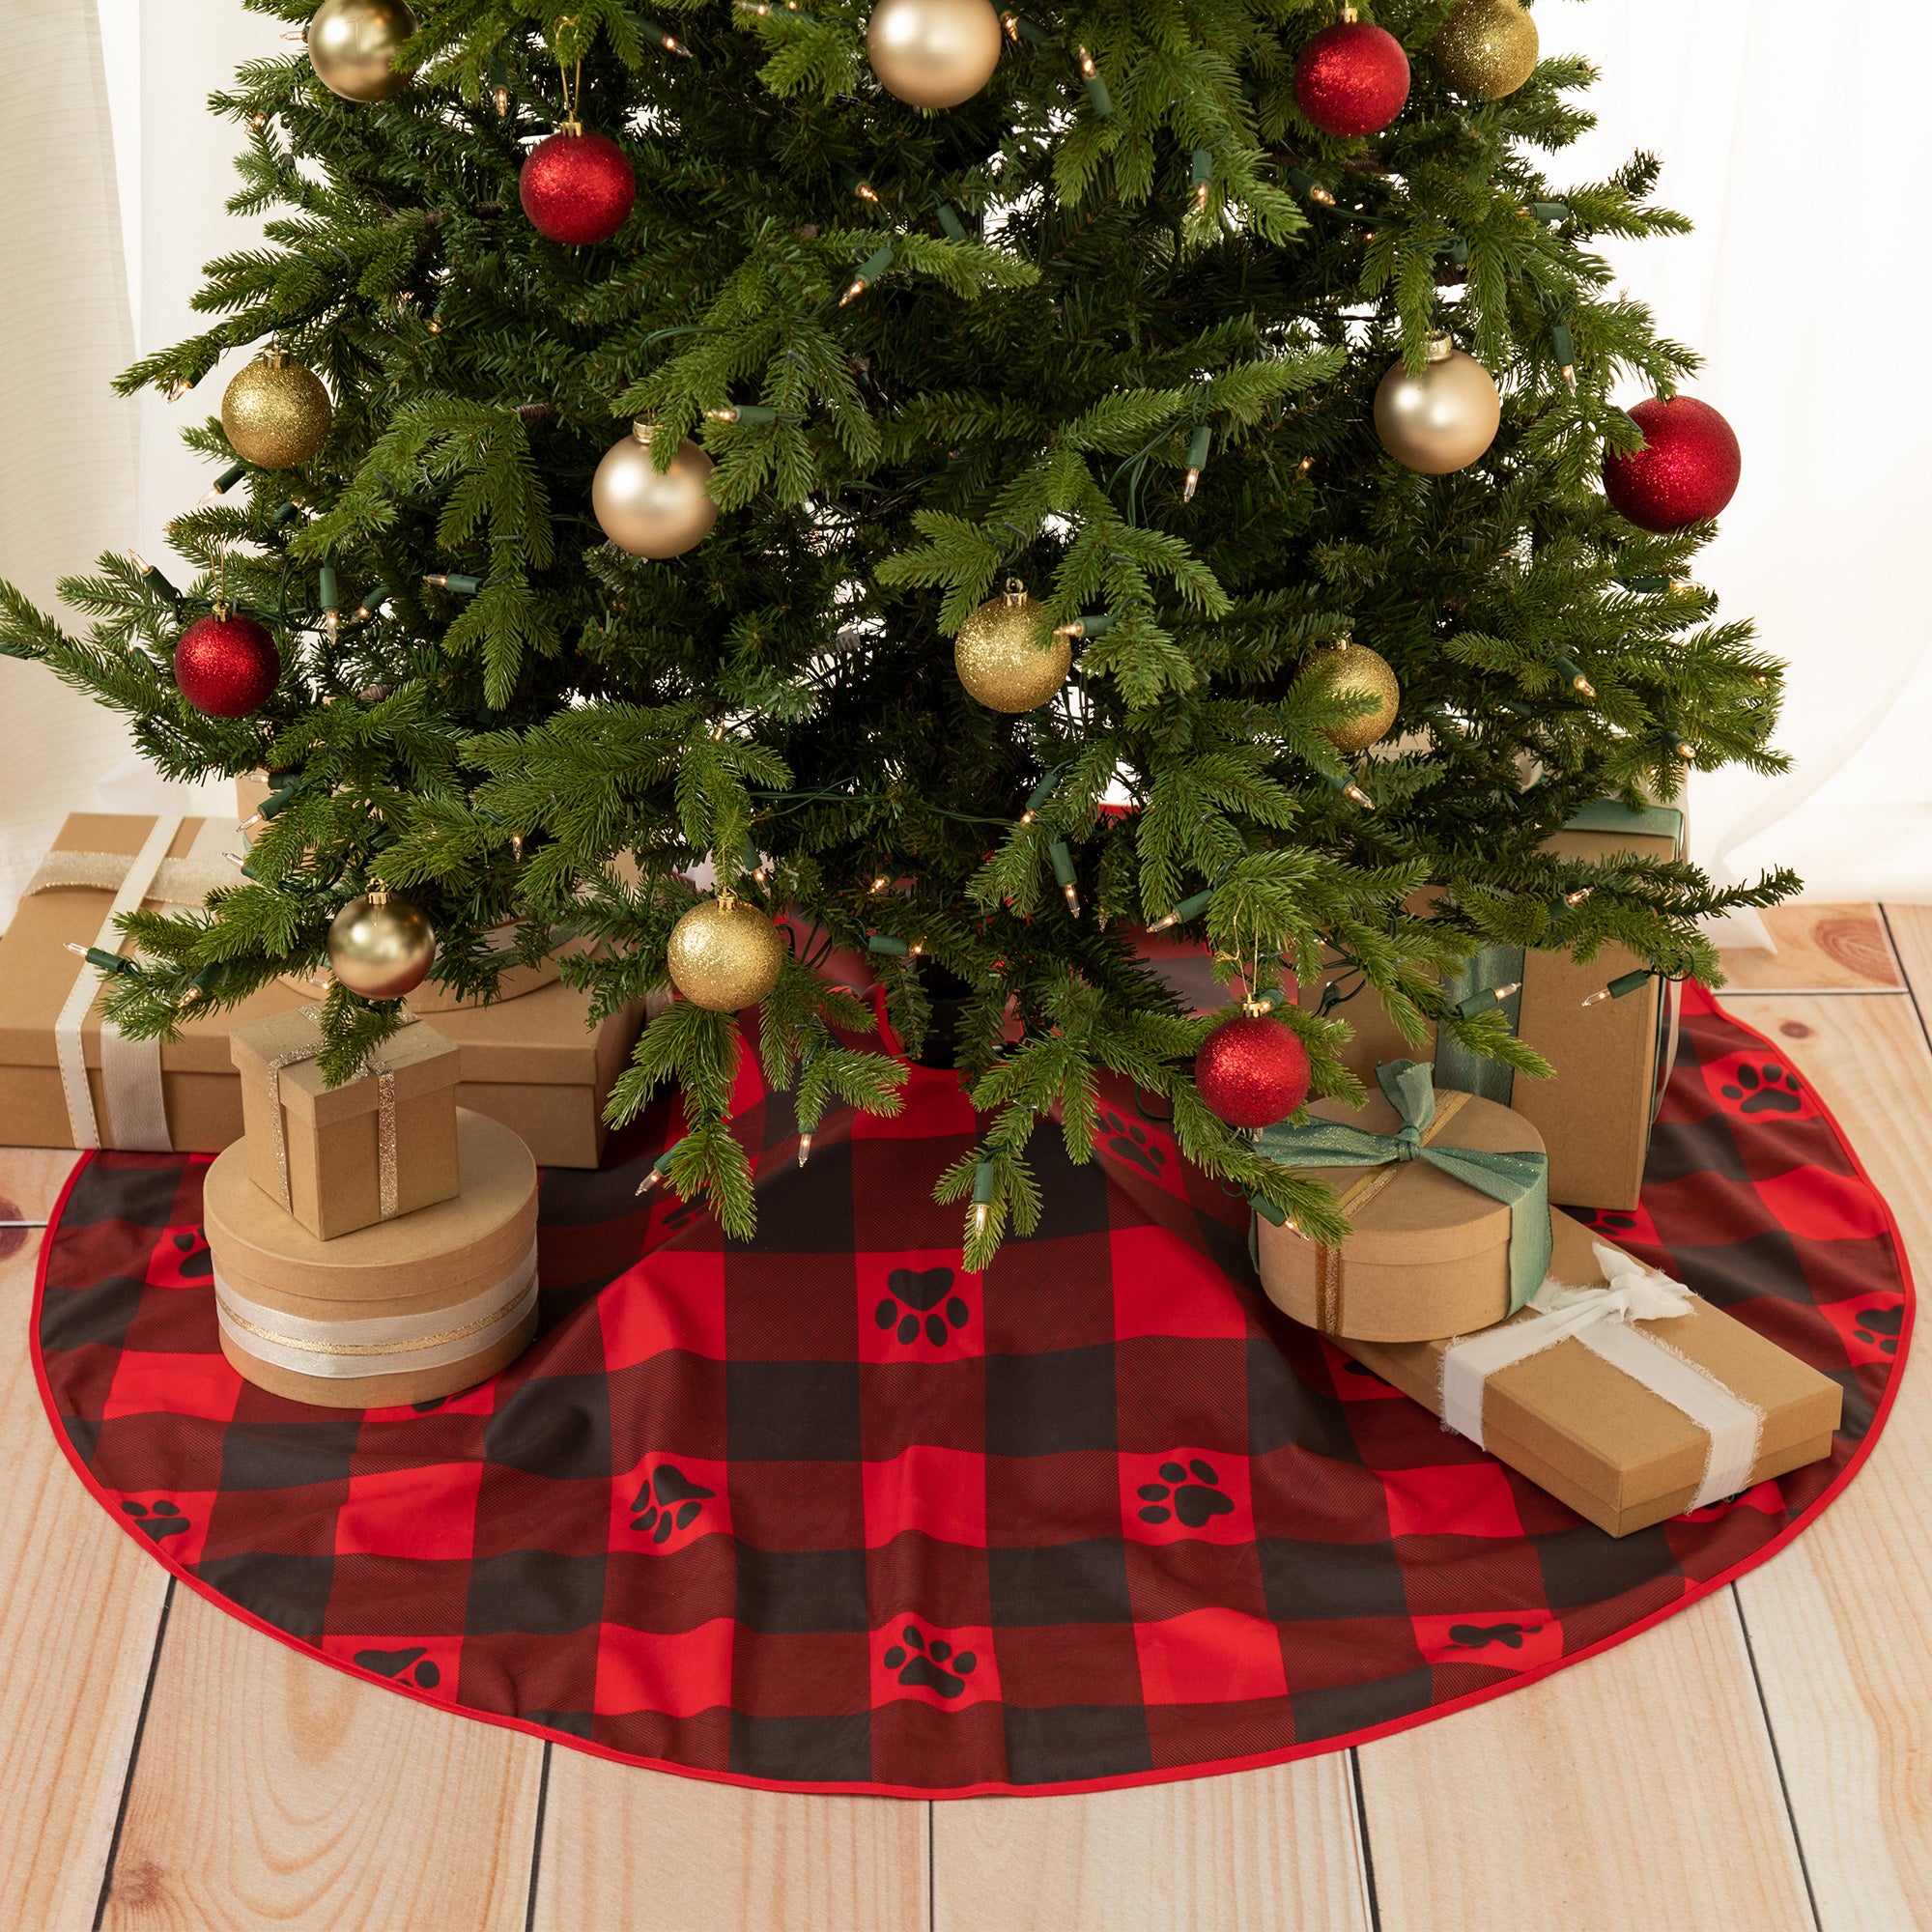 Pets & Paws Christmas Tree Skirt - Buffalo Paws